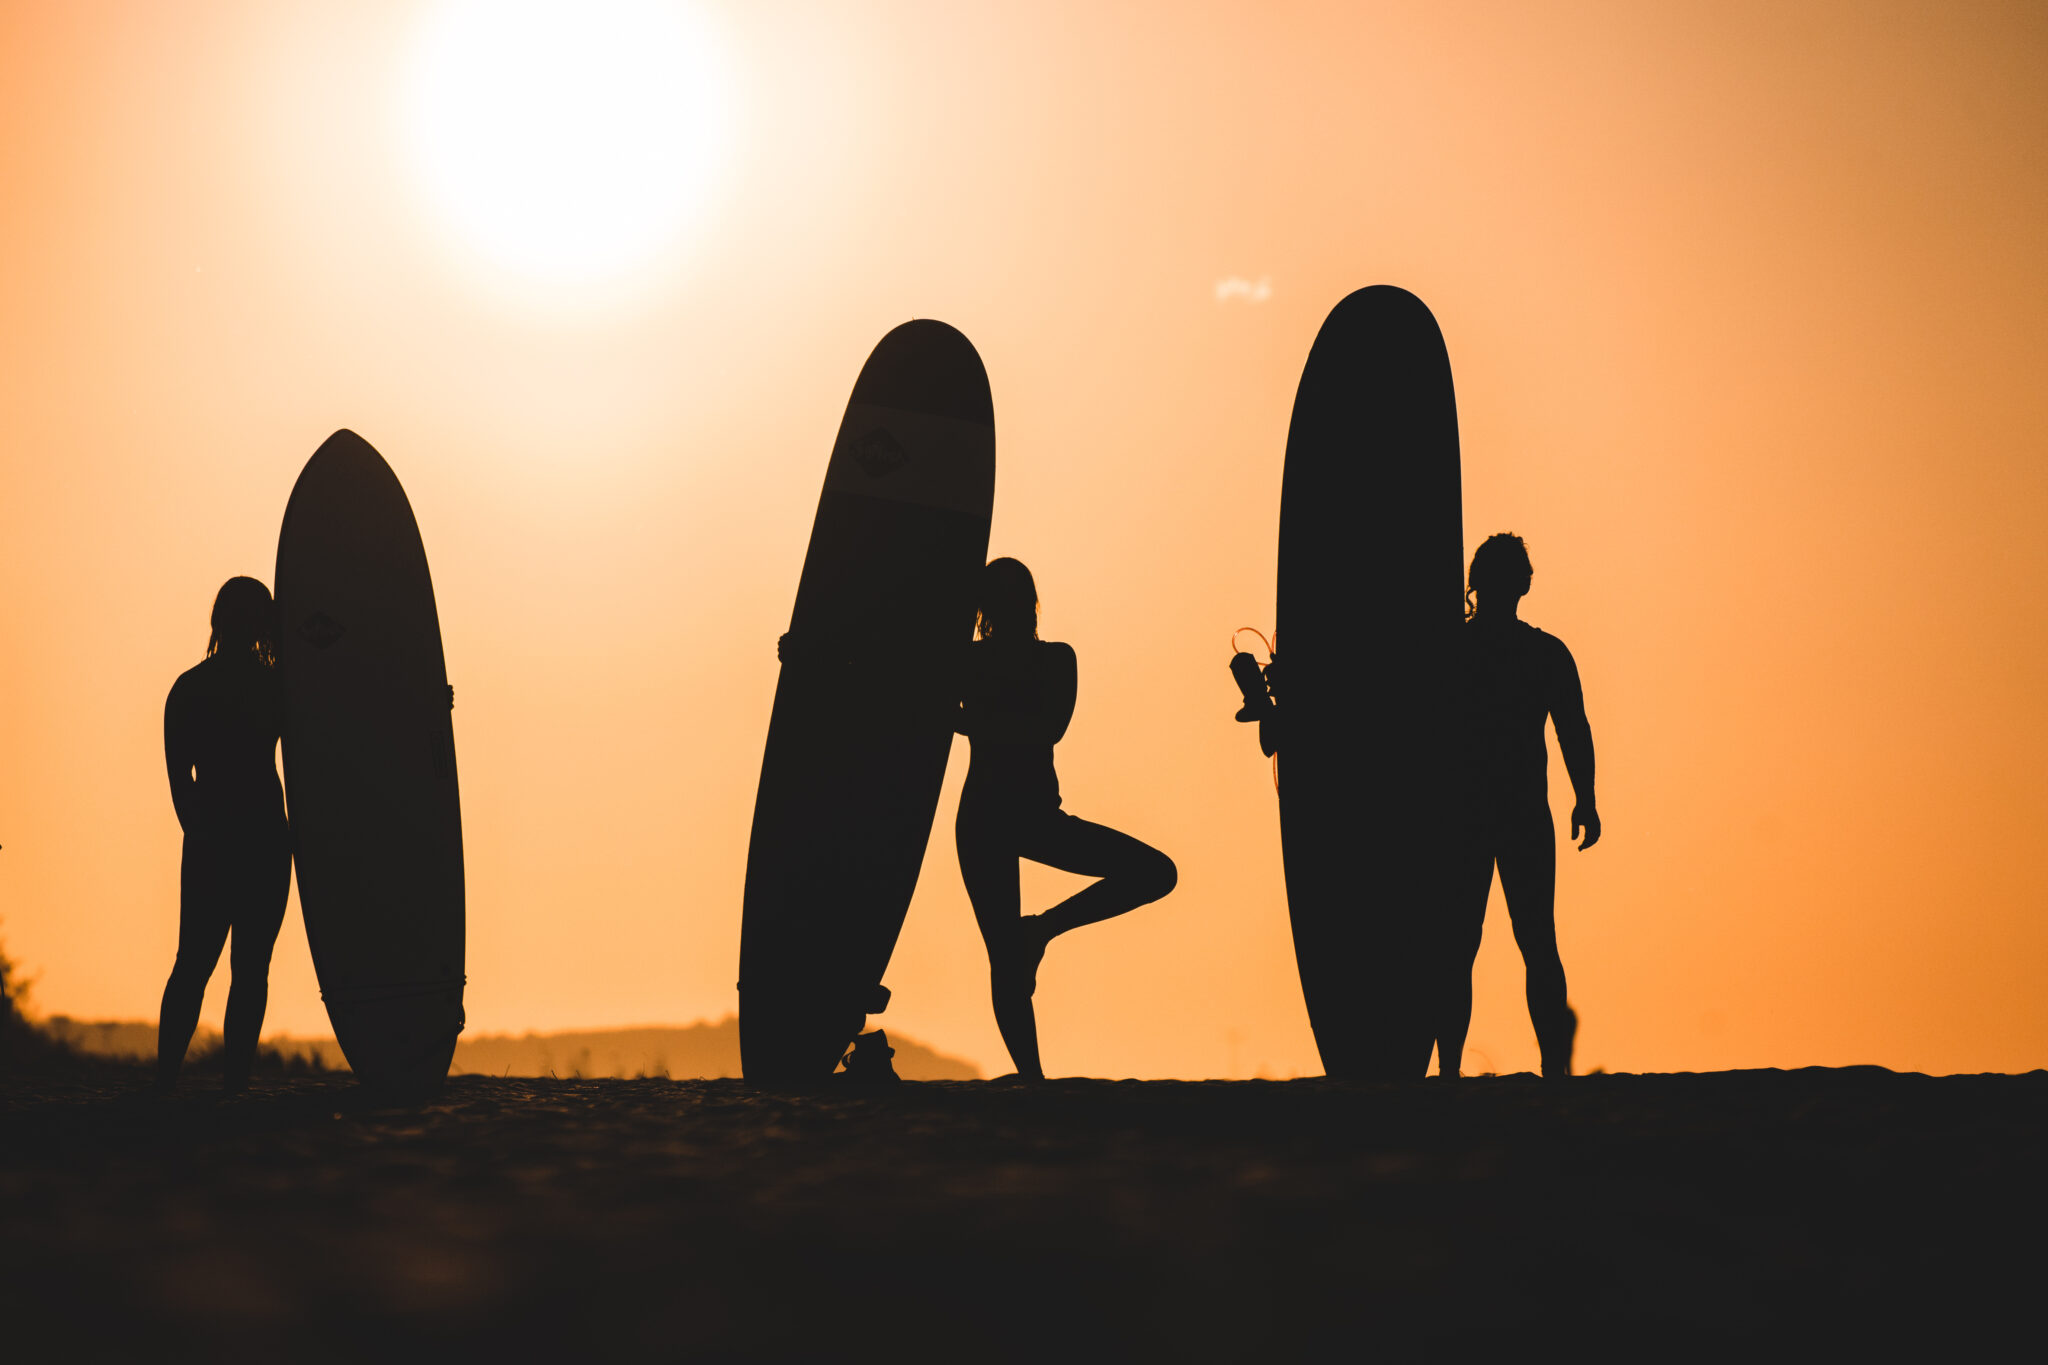 Sylwetki 3 surferów na tle zachodzącego słońca